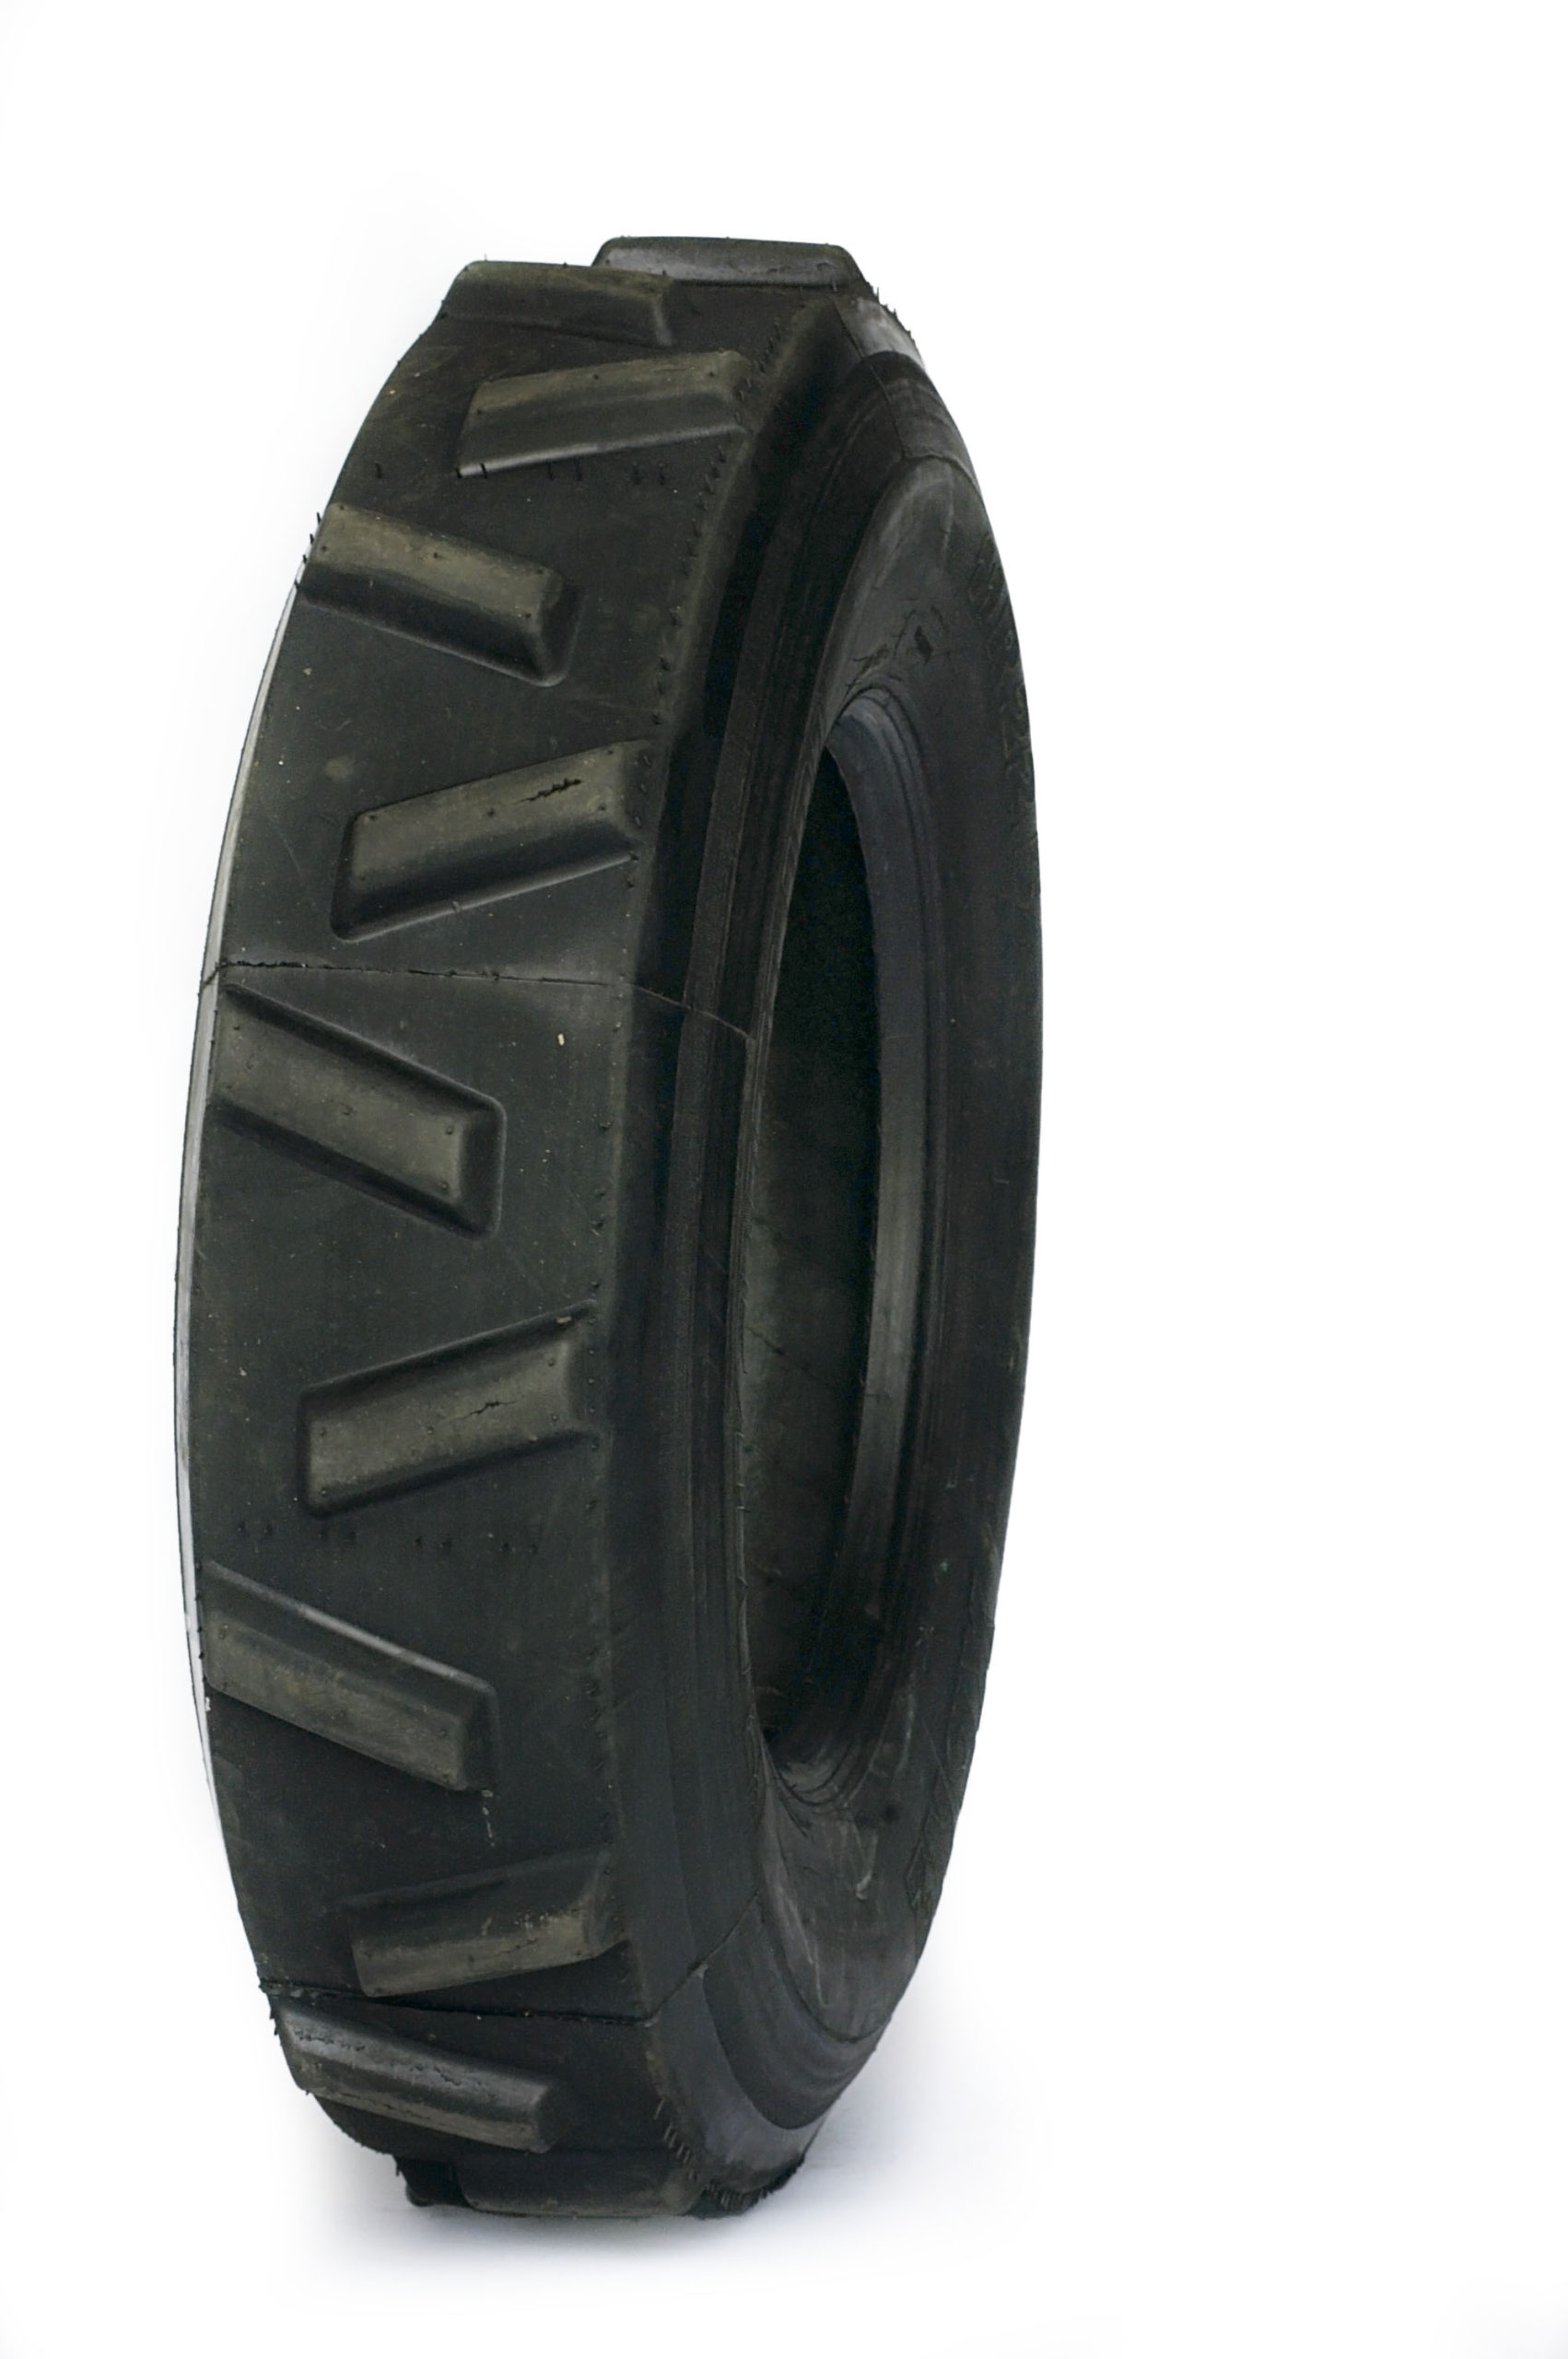 Tire Recappers - LT265/70R17 Retread Proforce HT